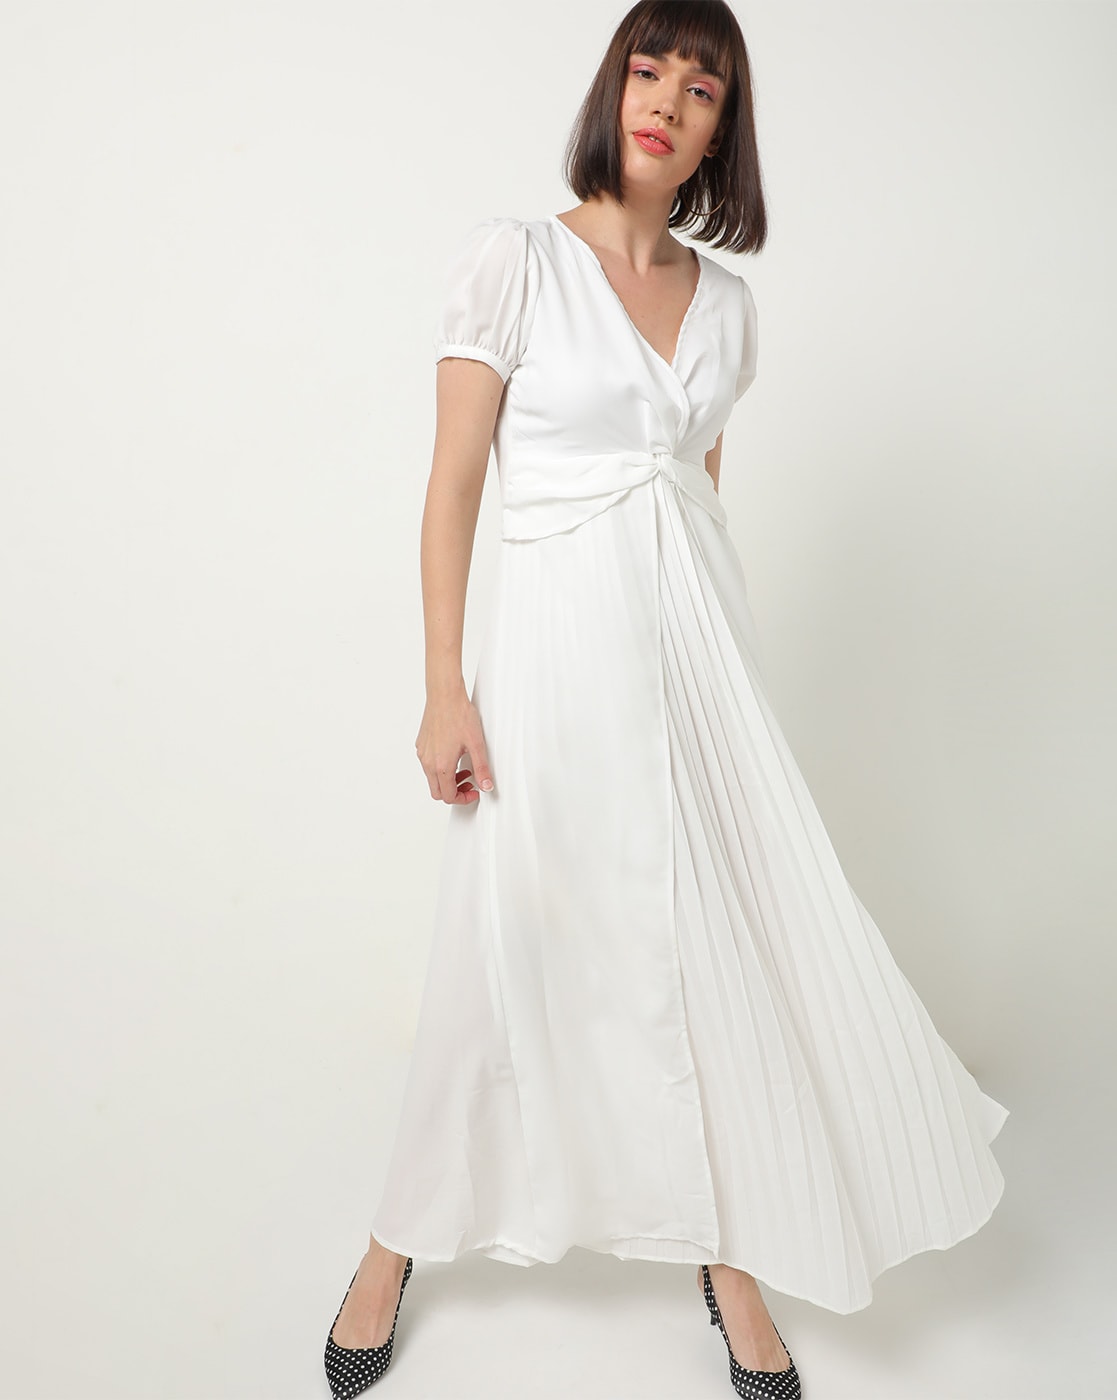 Buy Online Designer Dresses, dress material in Surat at Wholesale Price